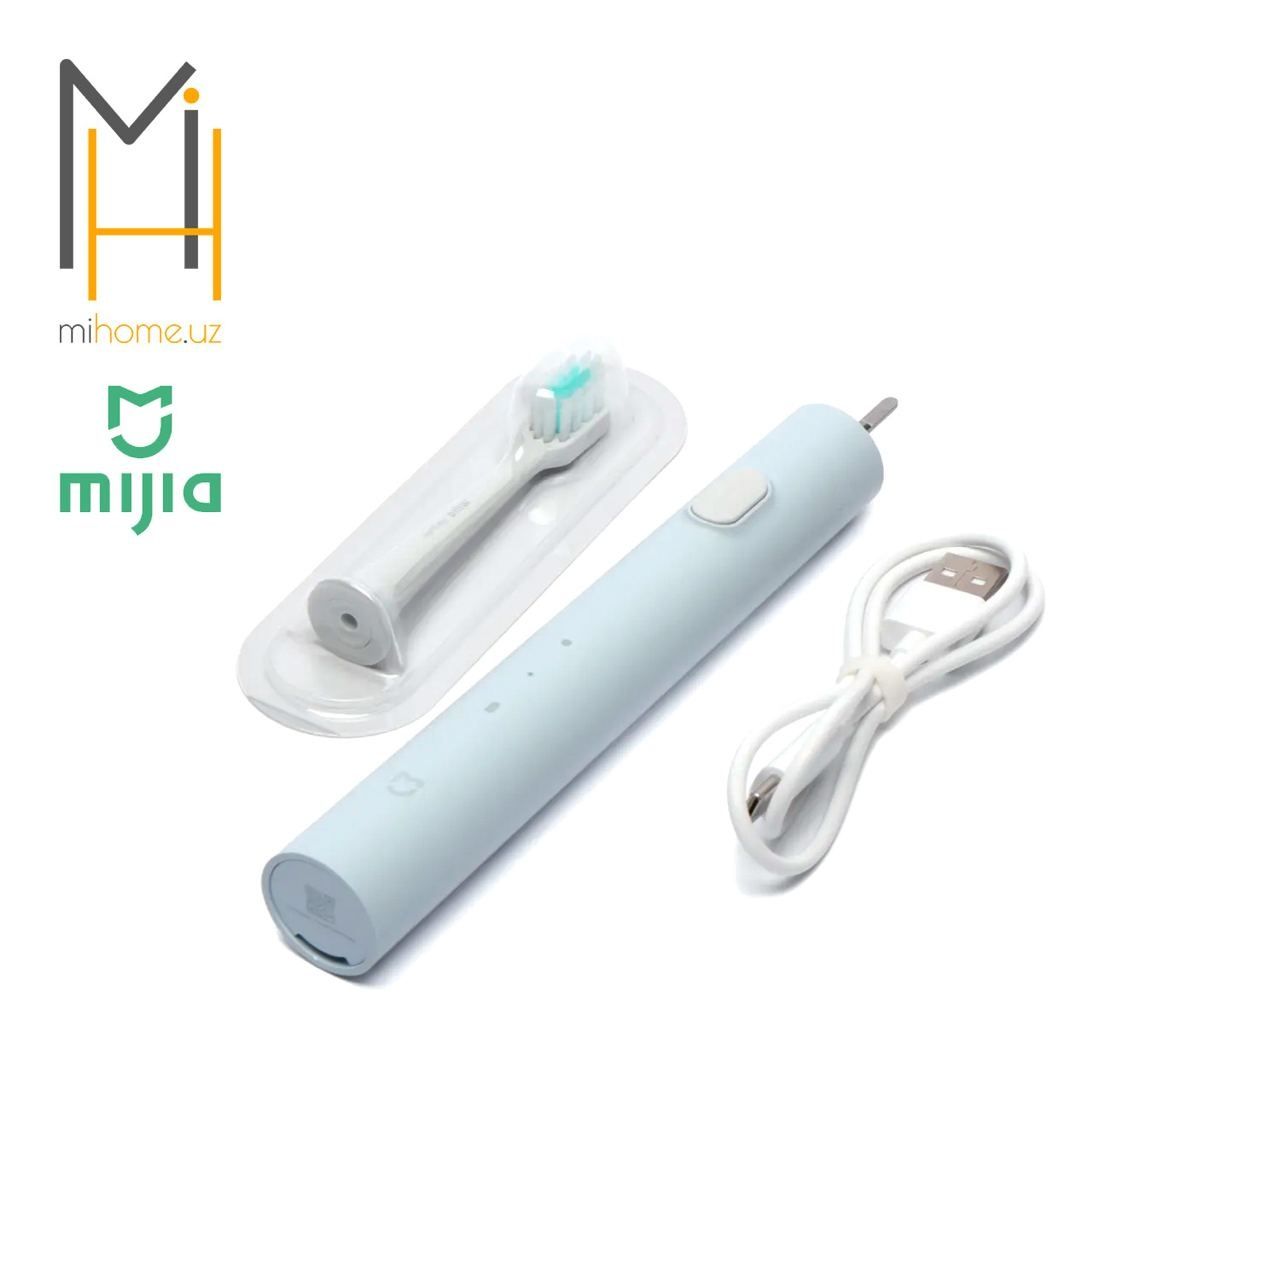 Электрическая зубная щетка Xiaomi Mijia T200 Electric Toothbrush